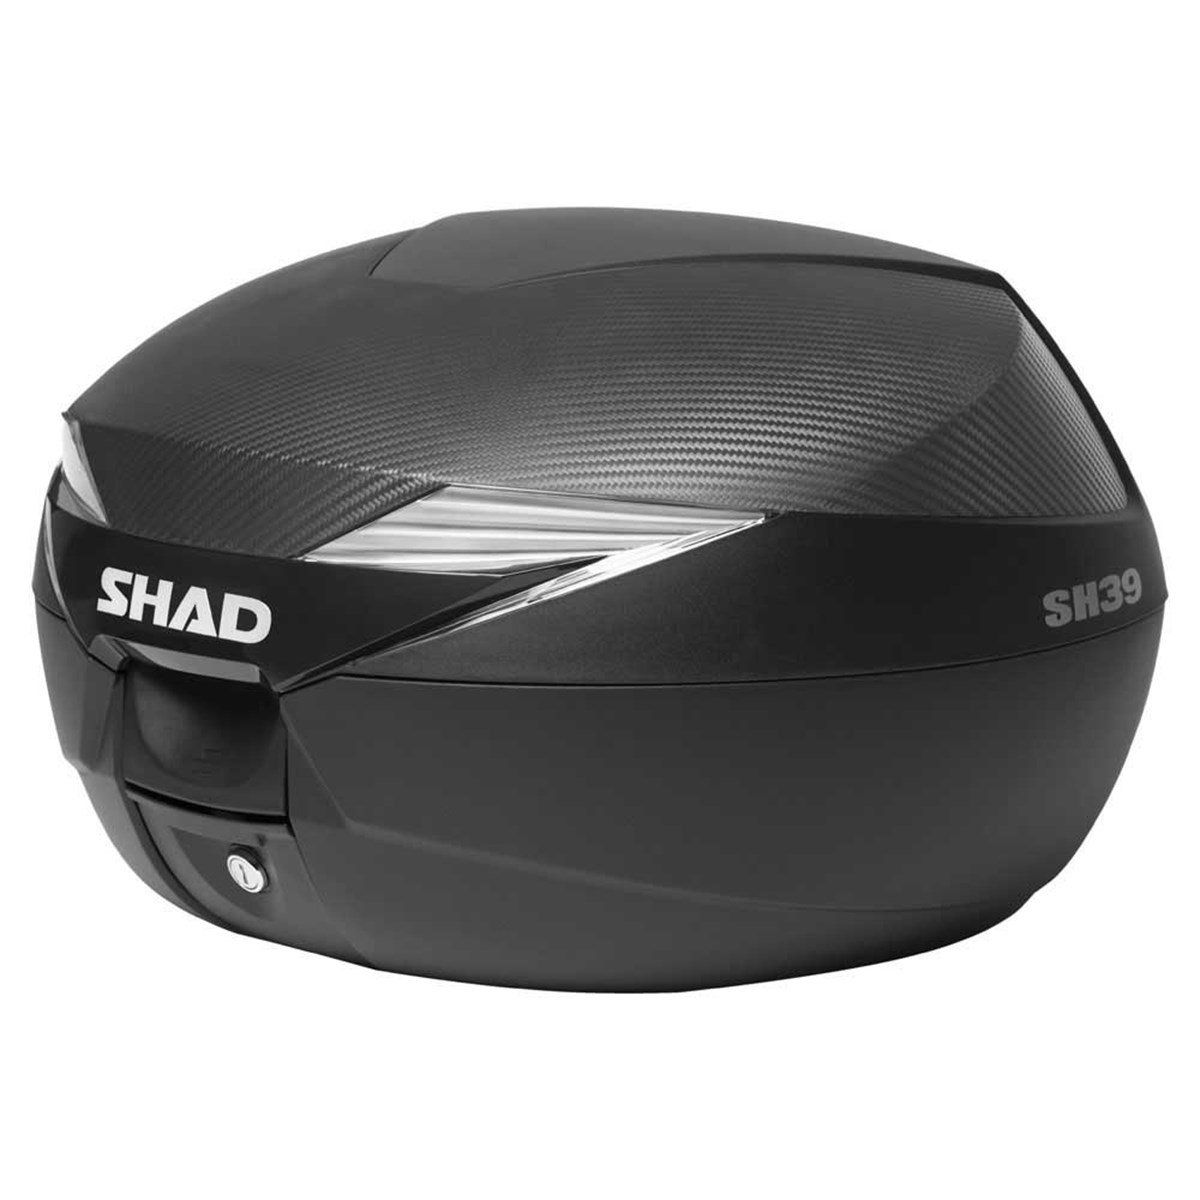 Shad SH39 Arka Çanta | Hızlı Teslimat ve Uygun Fiyat Seçenekleri ile  Vipmoto'da!